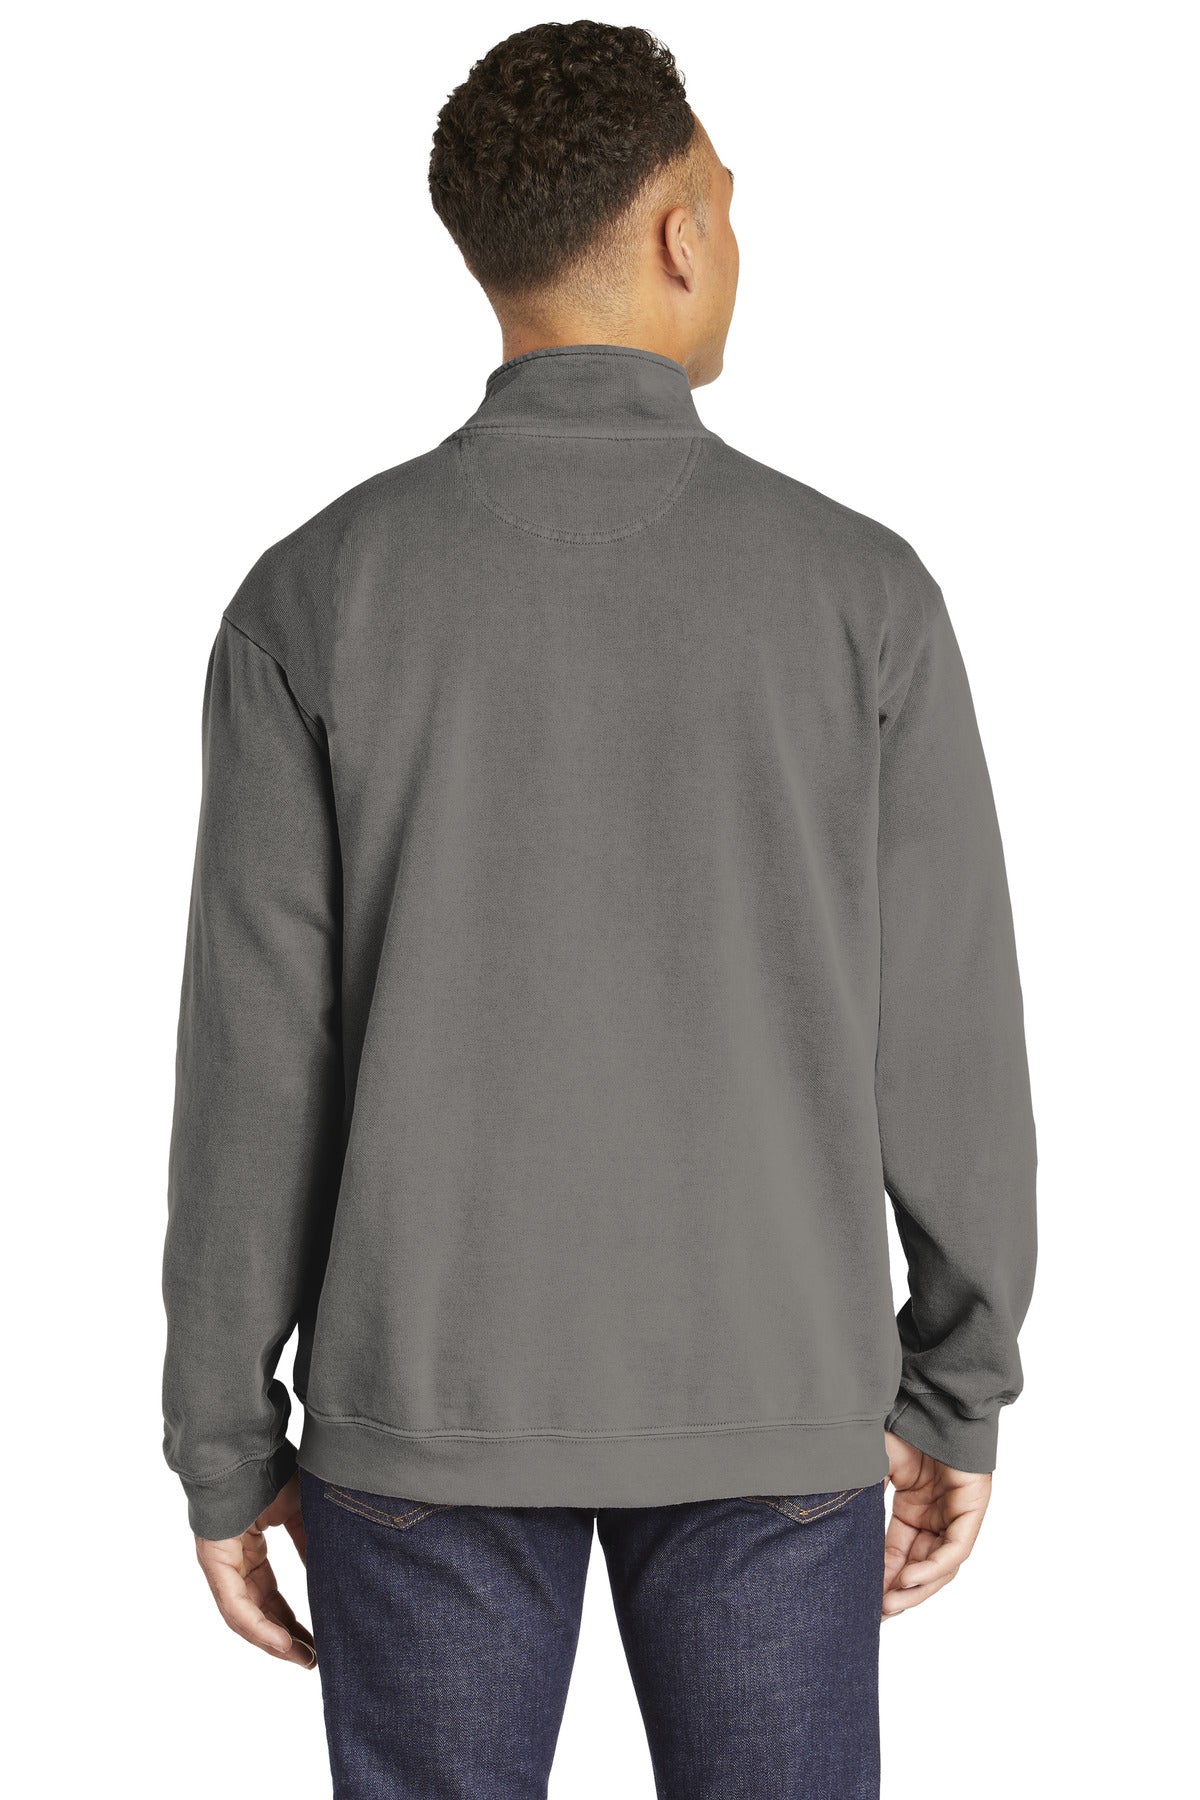 COMFORT COLORS  Ring Spun 1/4-Zip Sweatshirt. 1580